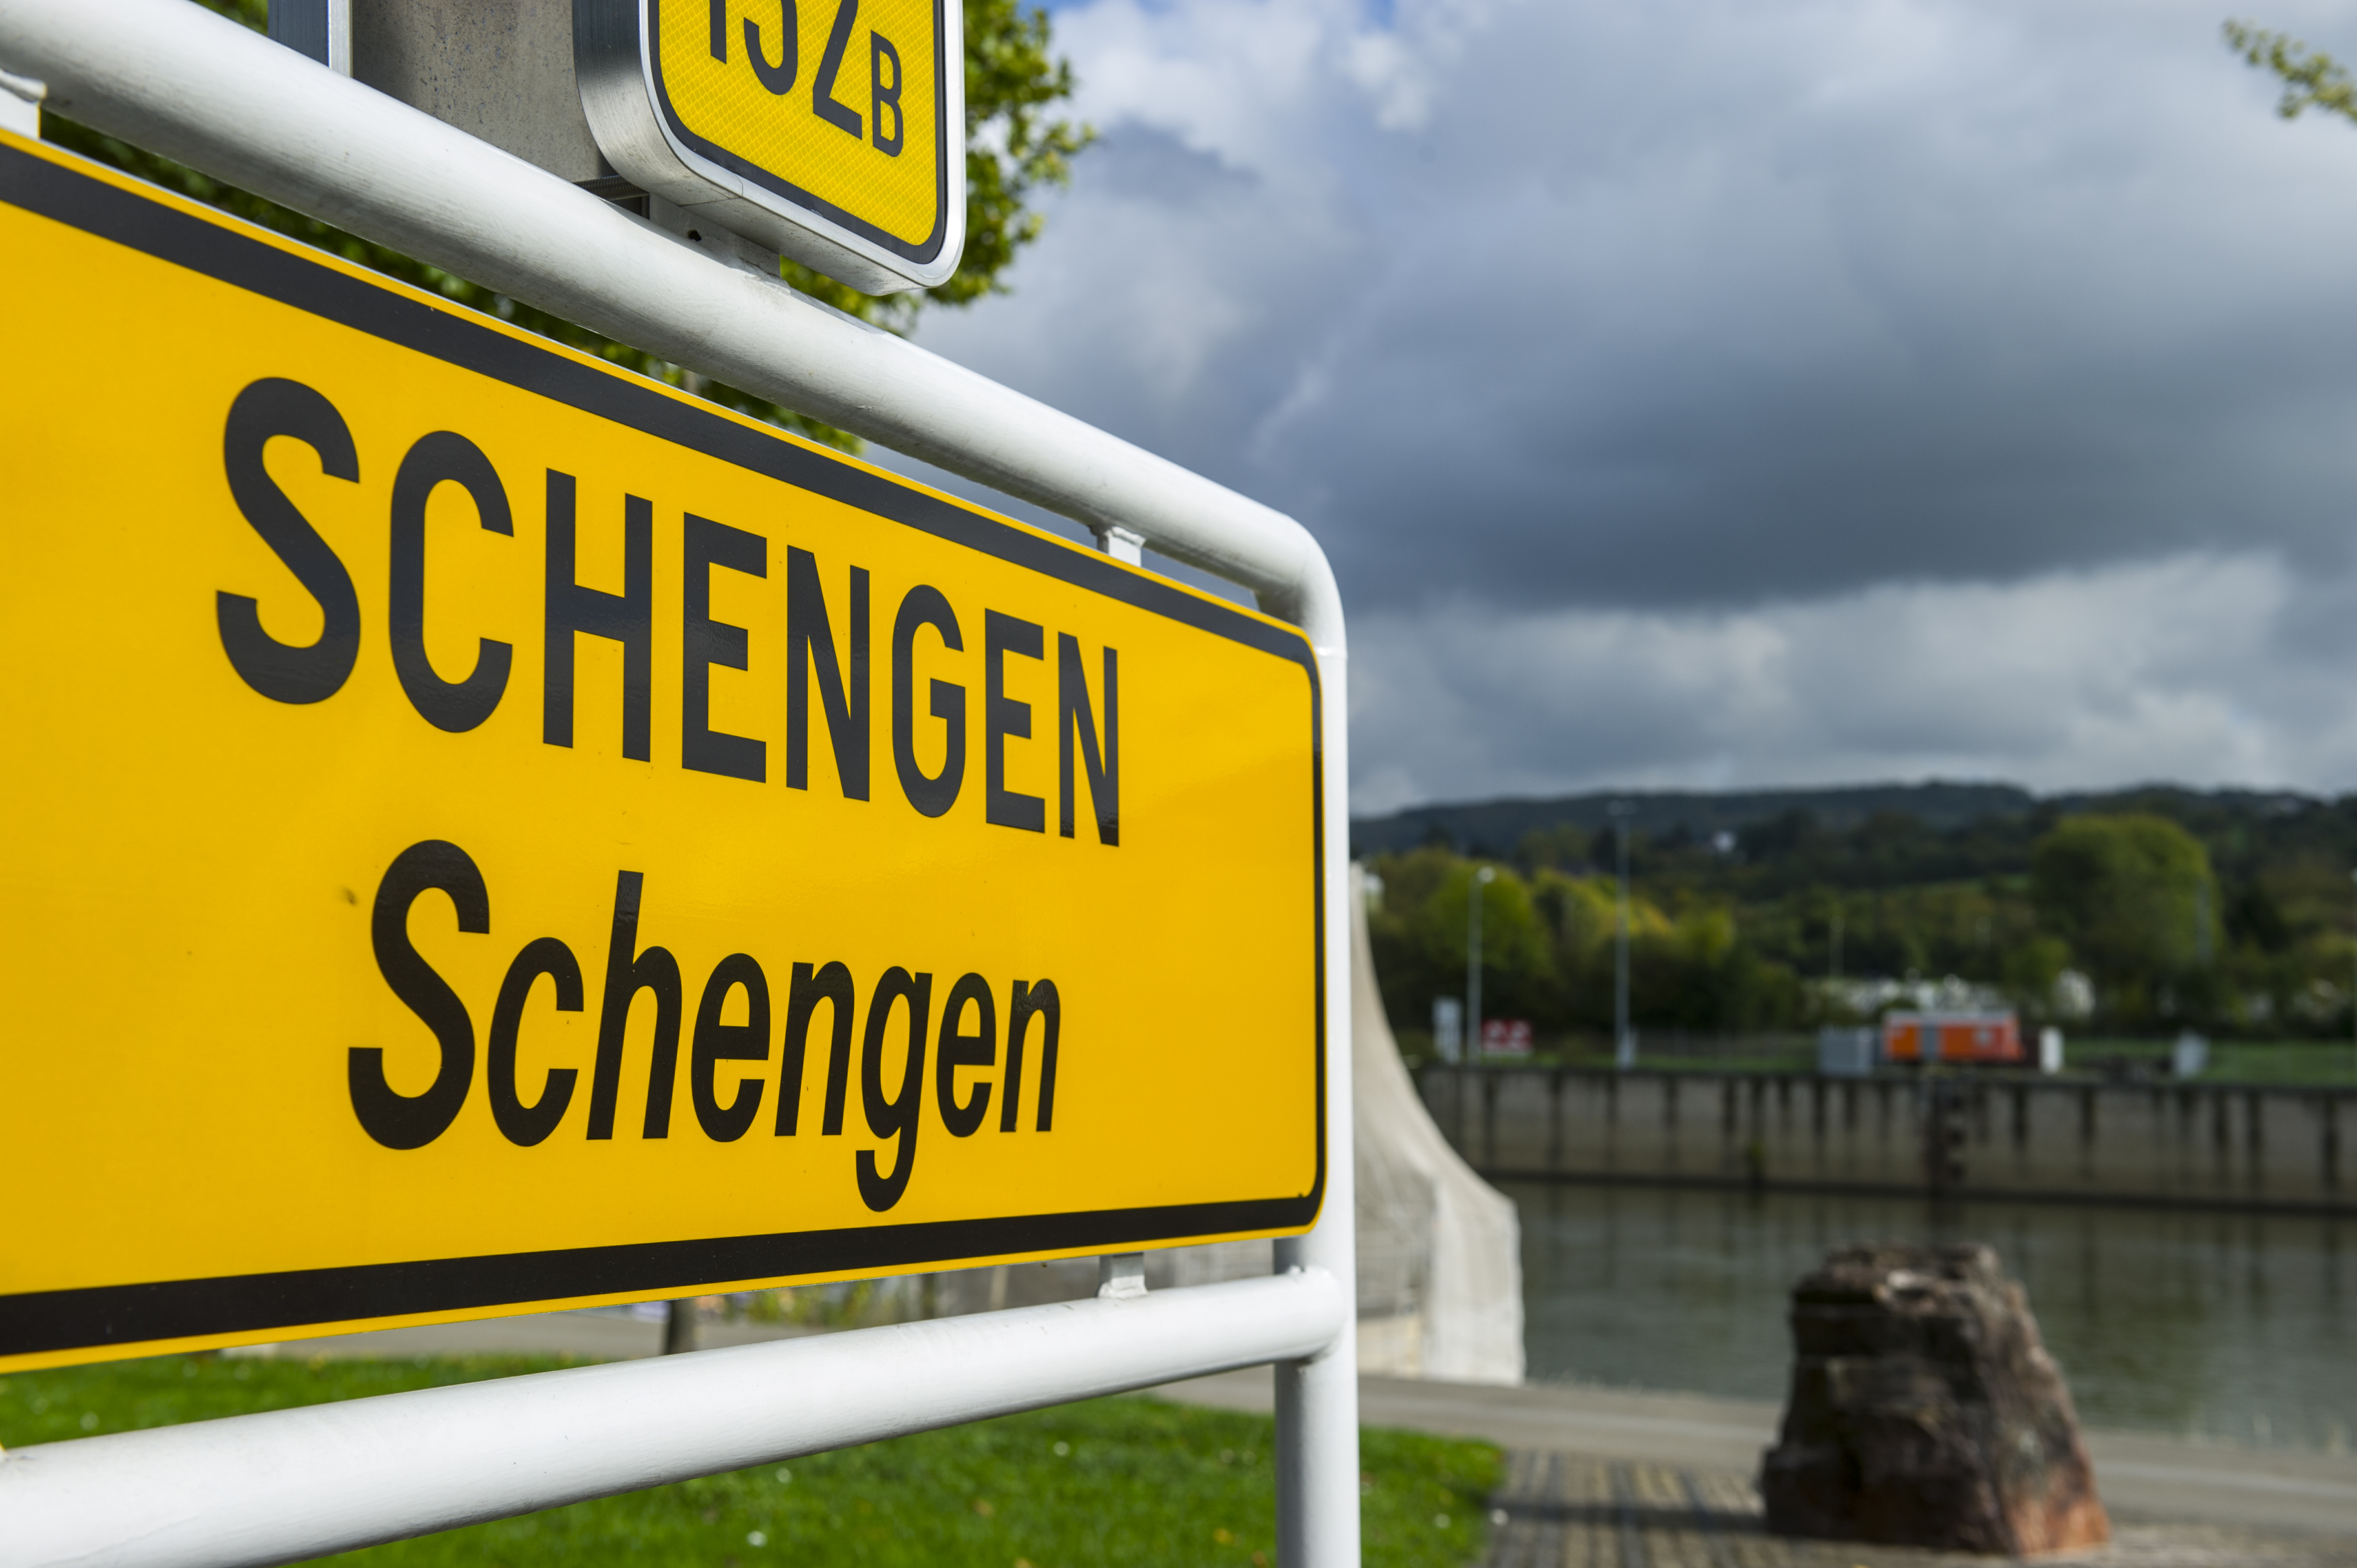 Что такое шенгенская зона